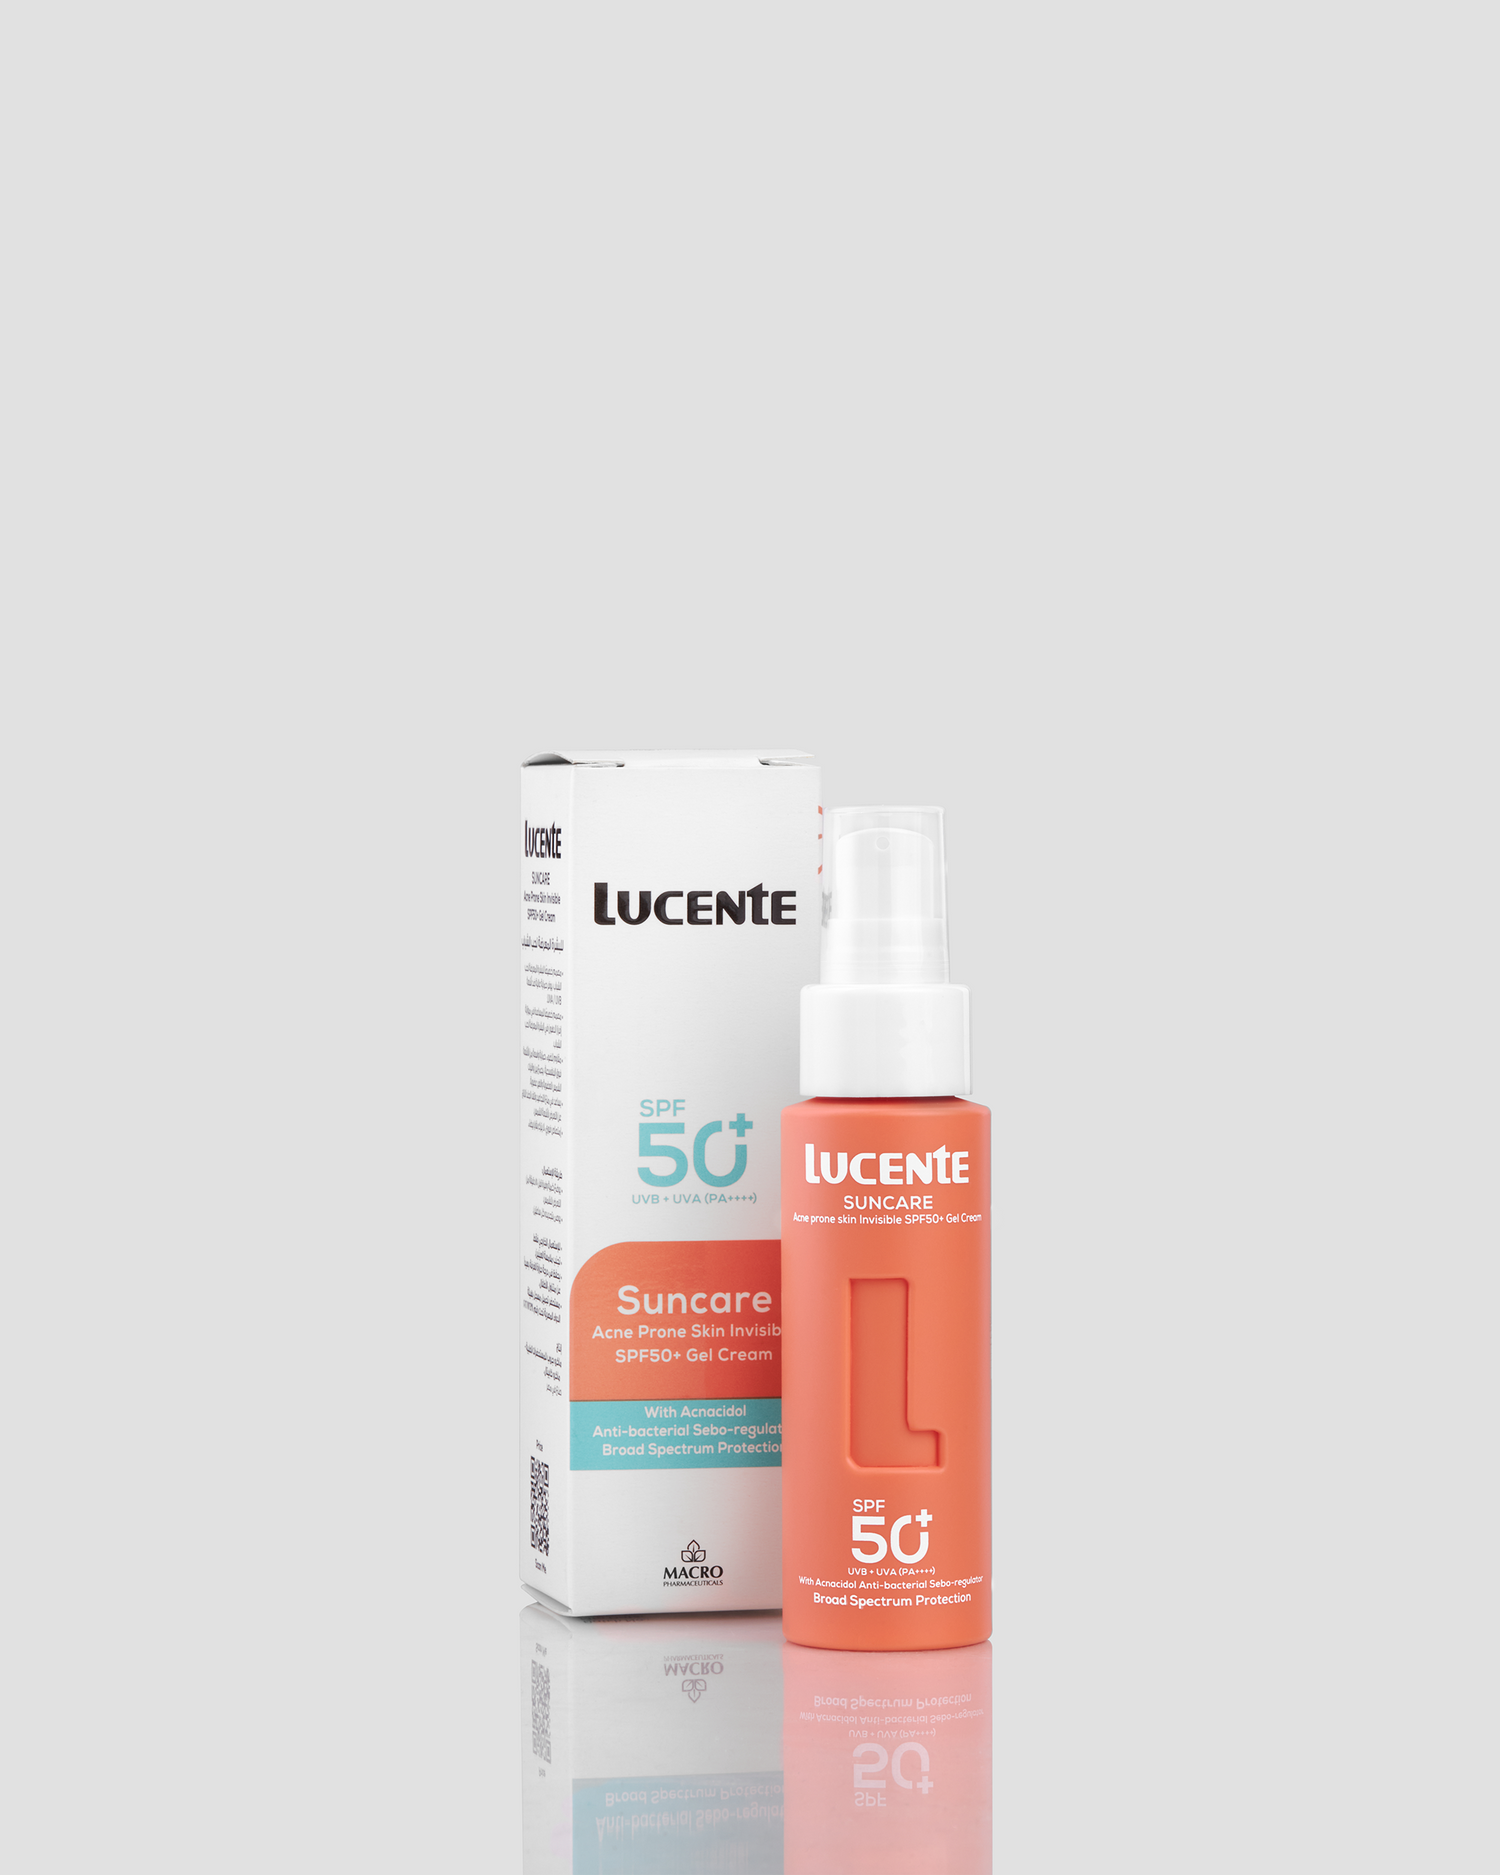 Lucente Suncare - Acne Prone Skin Invisible SPF 50+